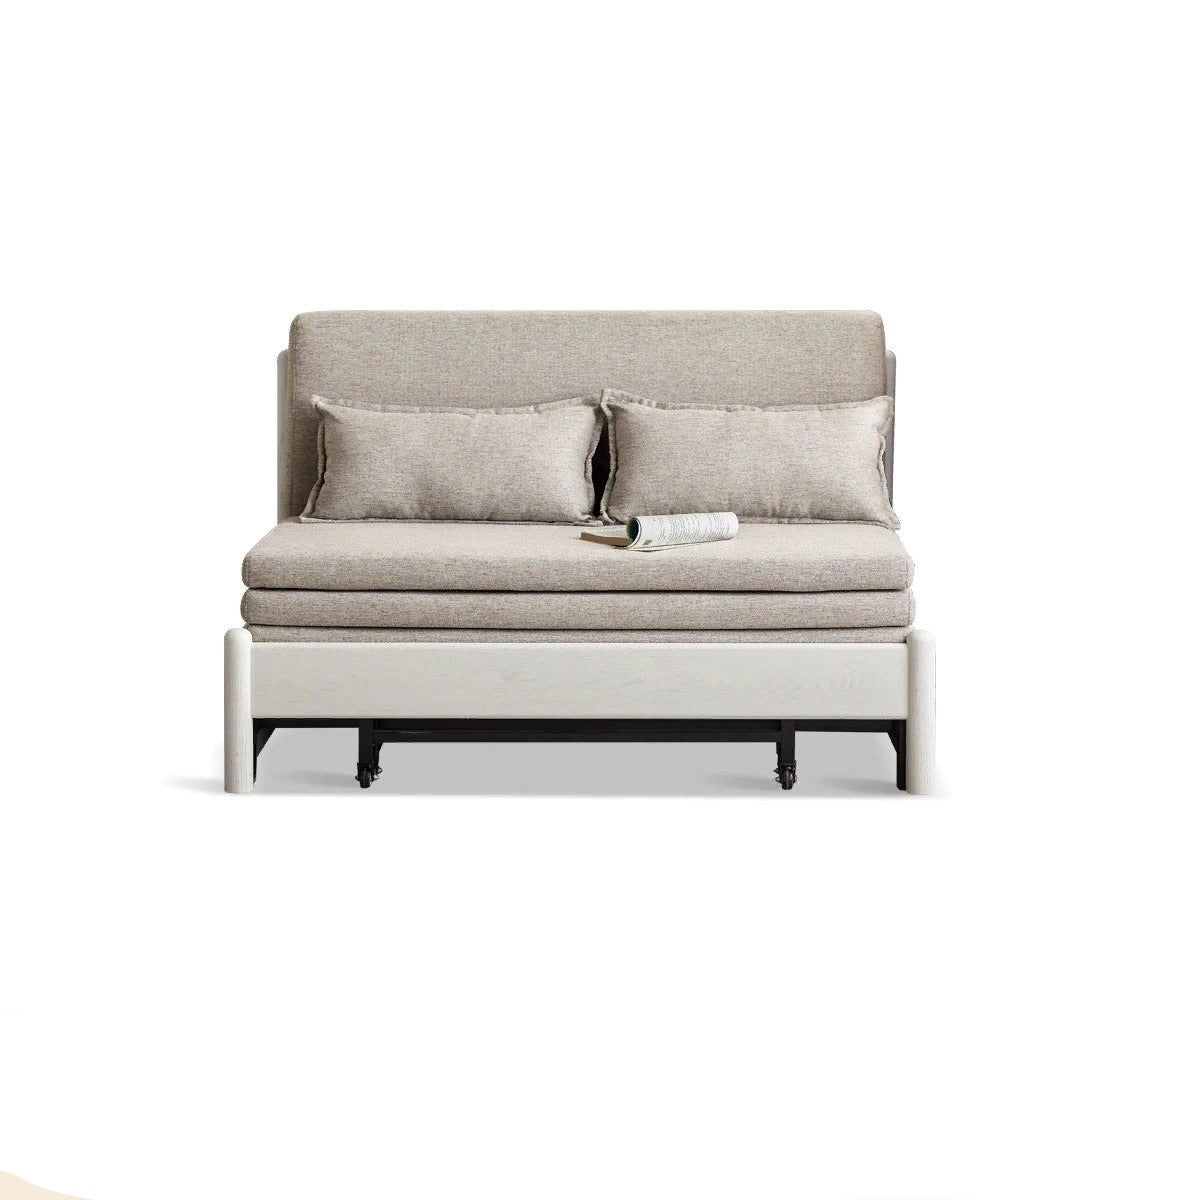 Oak solid wood sofa bed cream style folding sofa